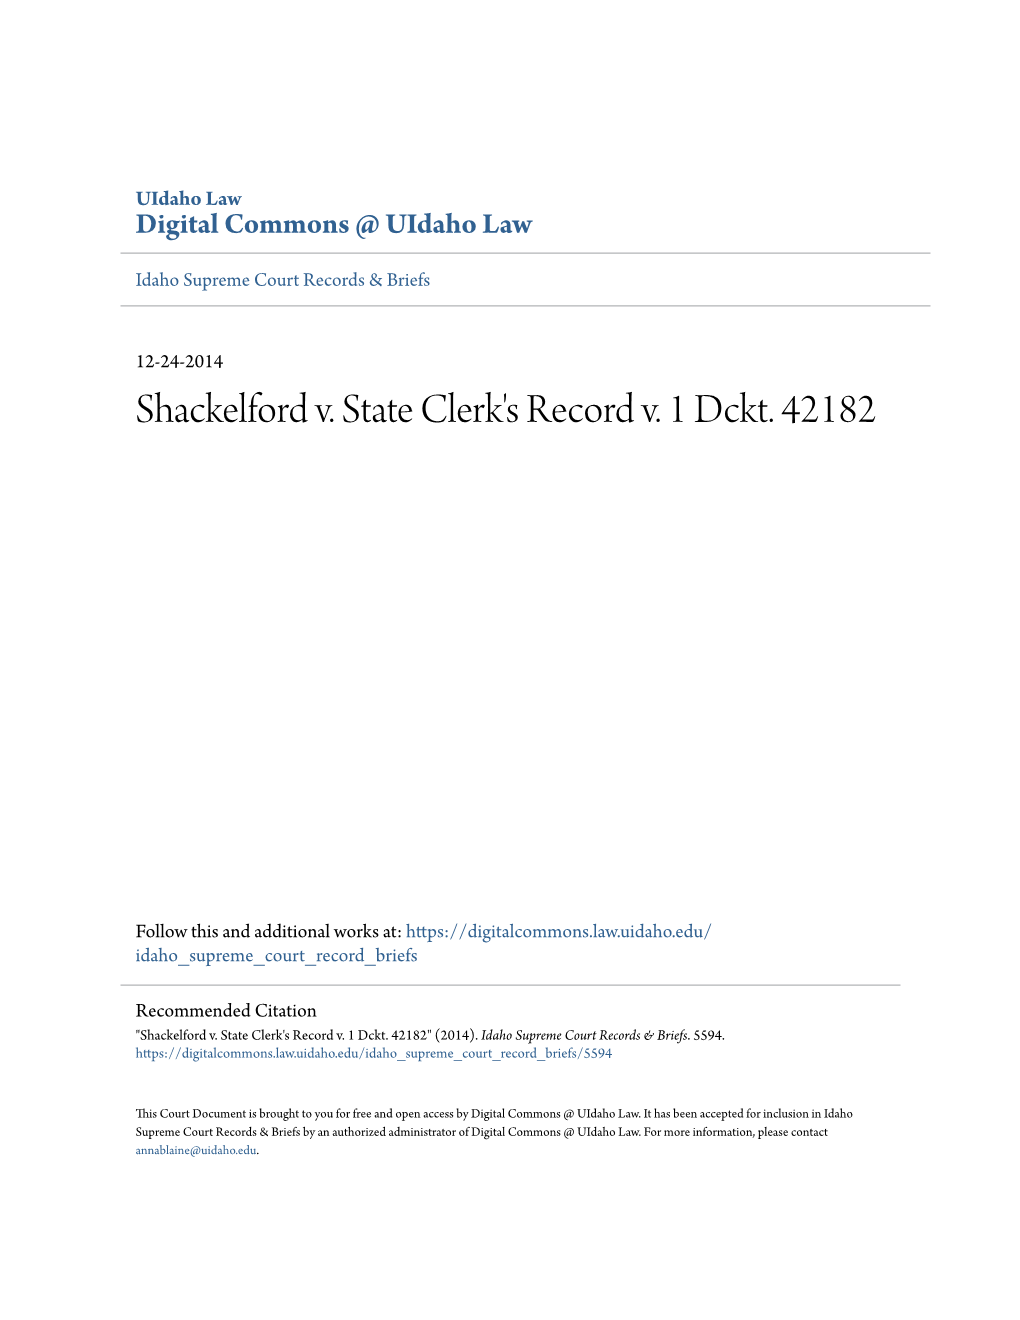 Shackelford V. State Clerk's Record V. 1 Dckt. 42182